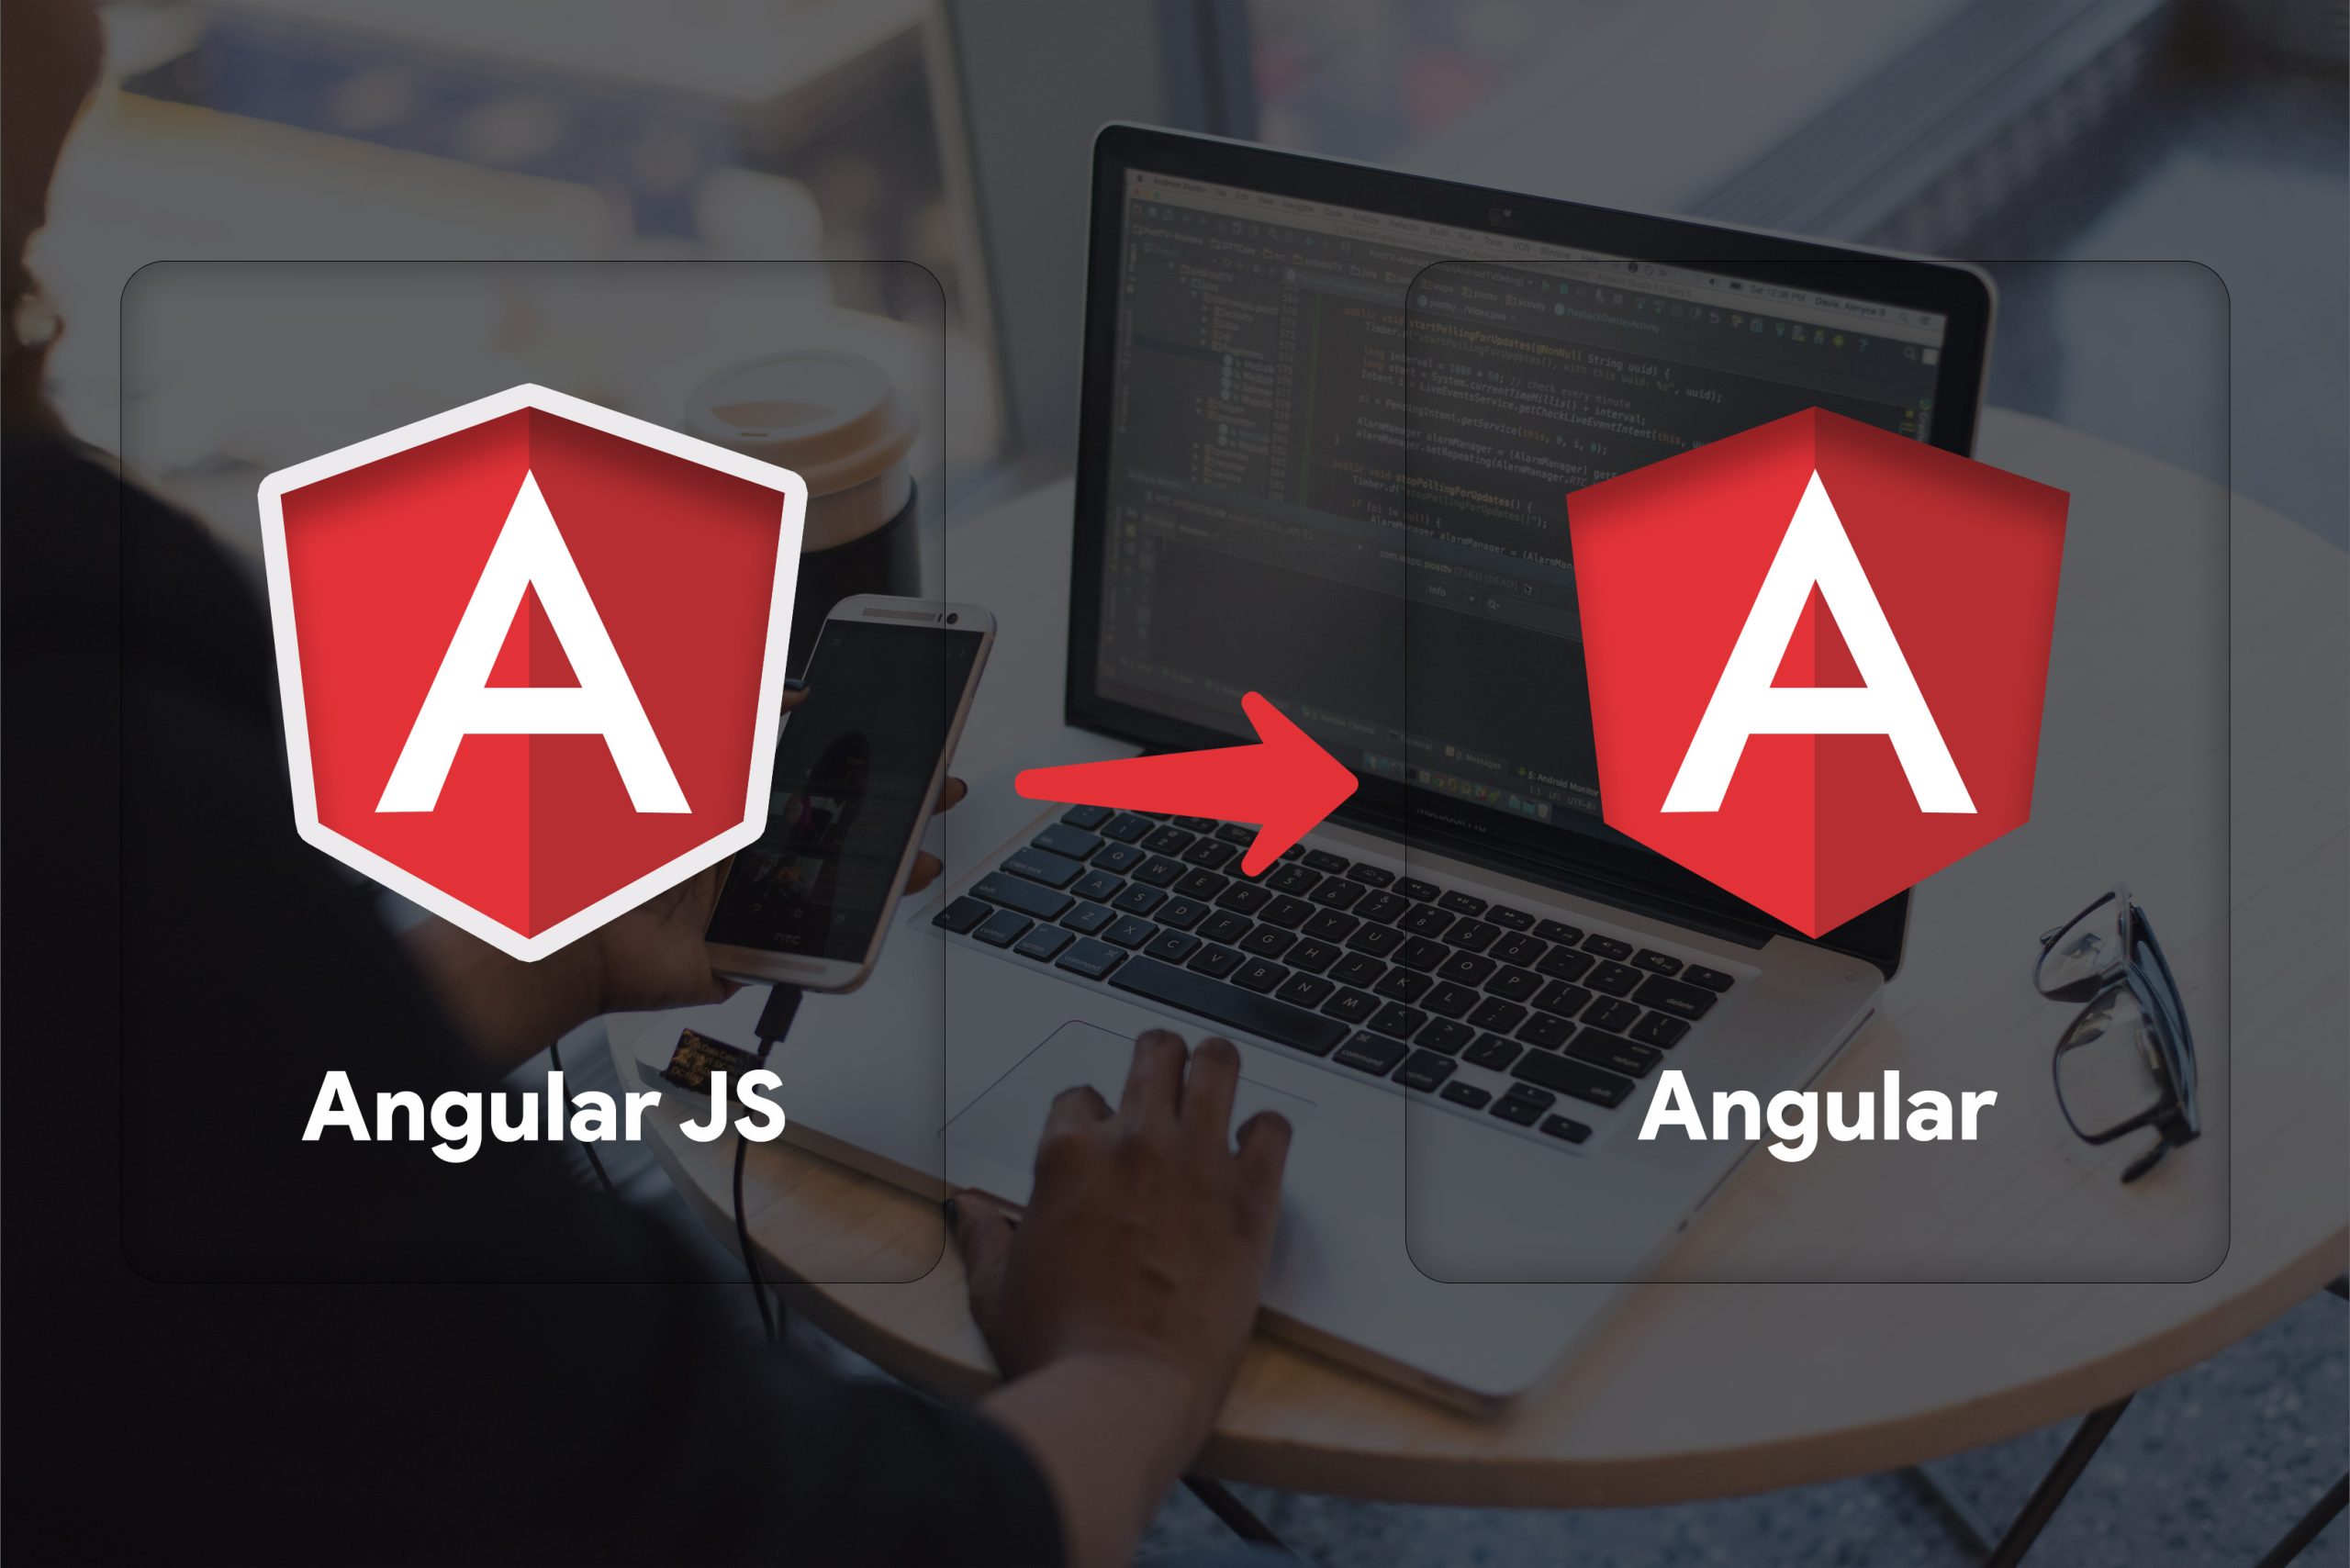 Angular js to angular migration